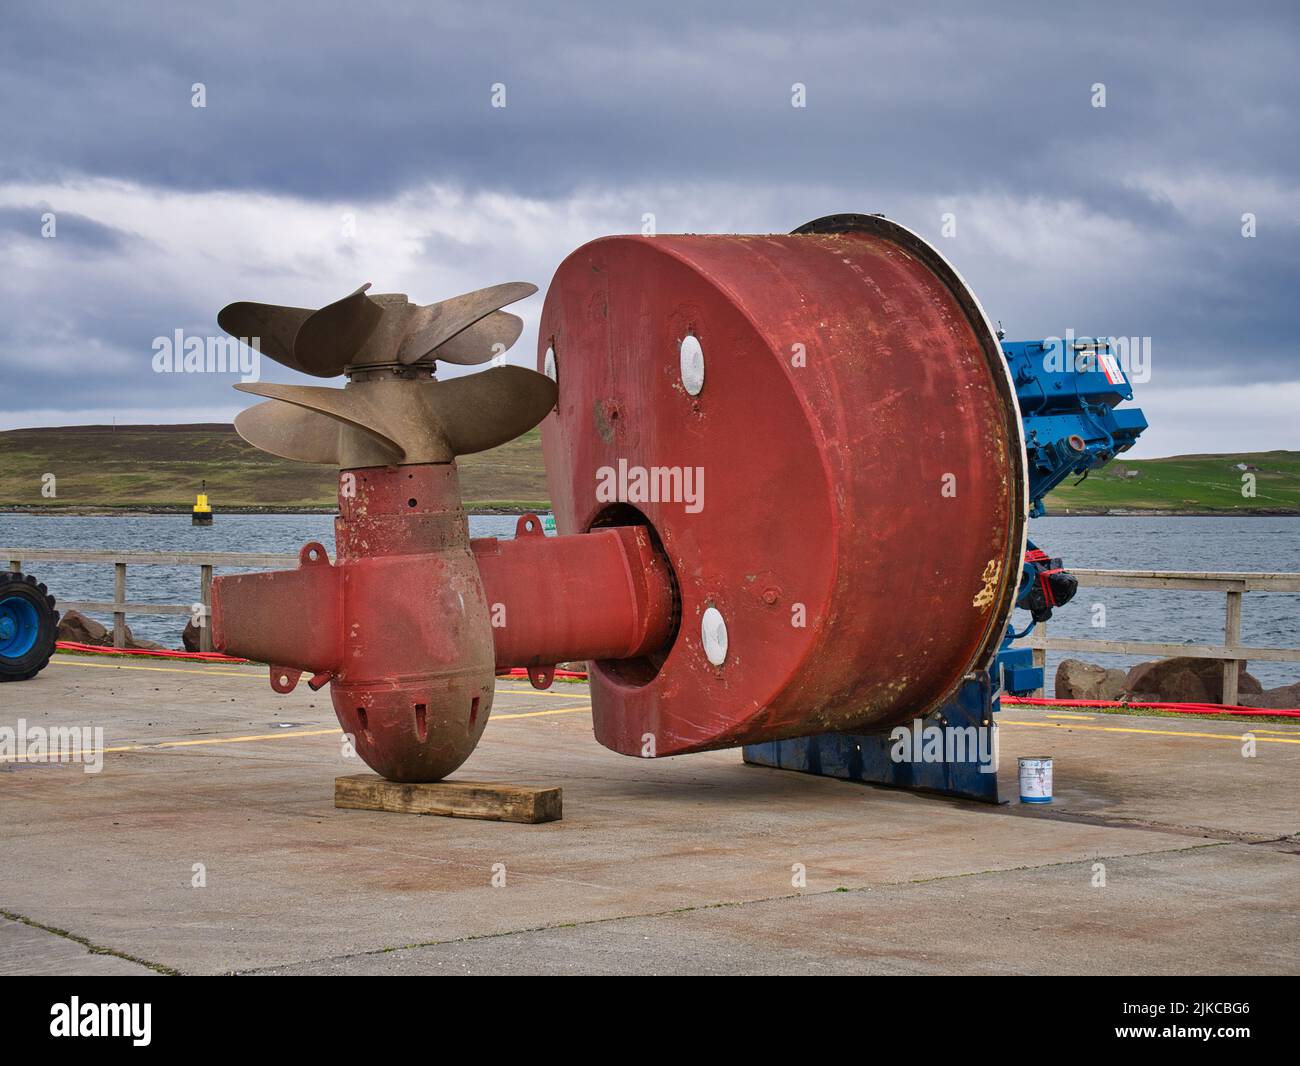 Un grande, rosso, doppio propellor - vite doppia azimuth thruster unit sulla banchina del porto di Lerwick in Shetland, Regno Unito. Assunto in una giornata nuvolosa e nuvolosa. Foto Stock